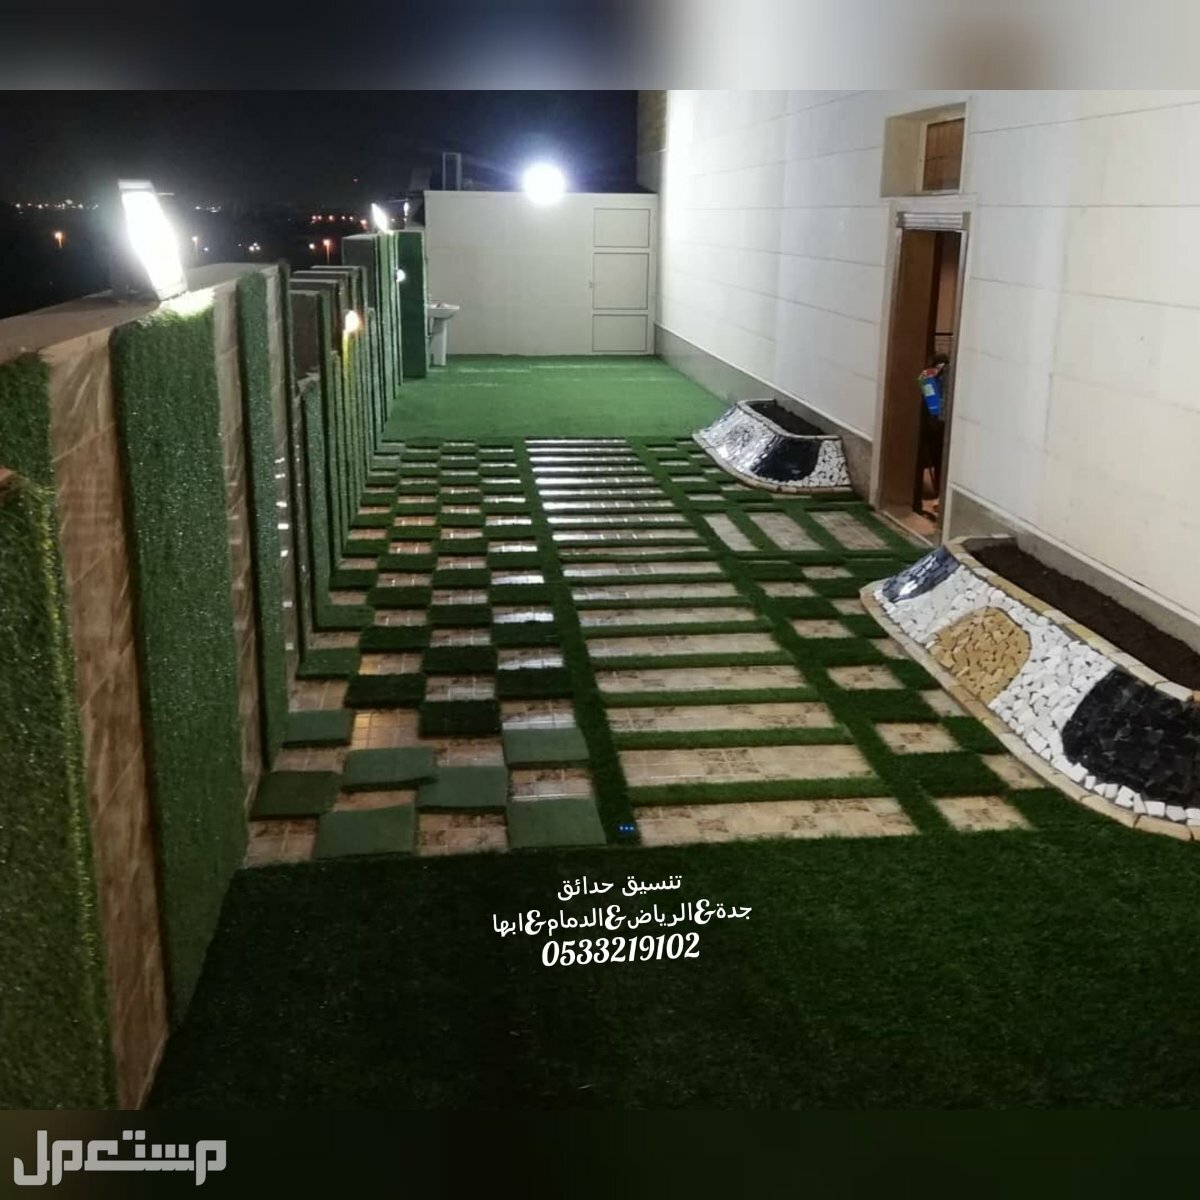 تنسيقات مودرن للحدائق المنزلية عشب صناعى السعوديه تركيب مظلات تصميم شلالات